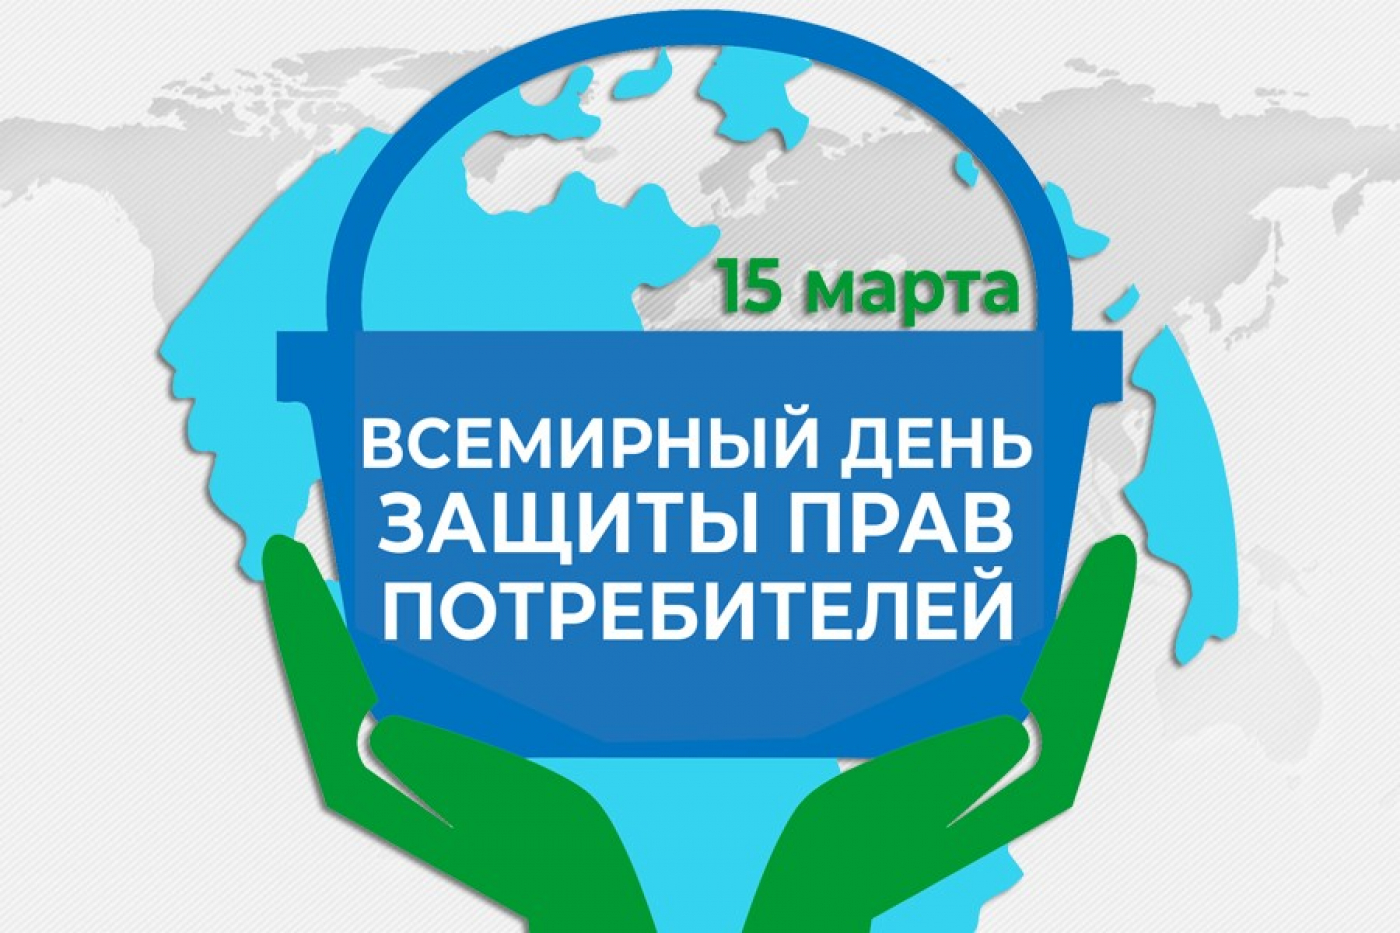 15 марта отмечается Всемирный день защиты прав потребителей.